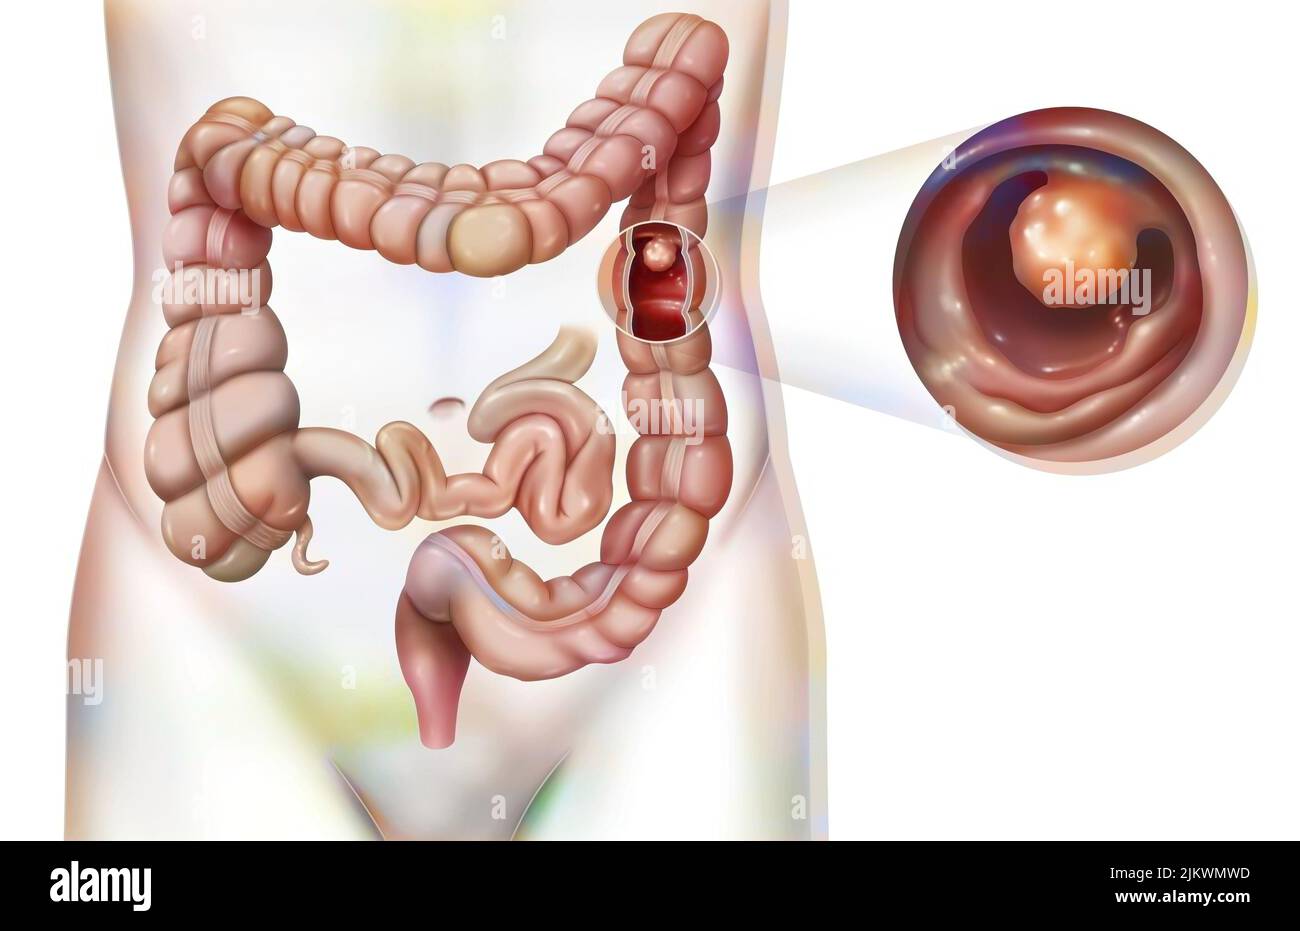 Aparato digestivo: El colon con pólipo colónico. Foto de stock